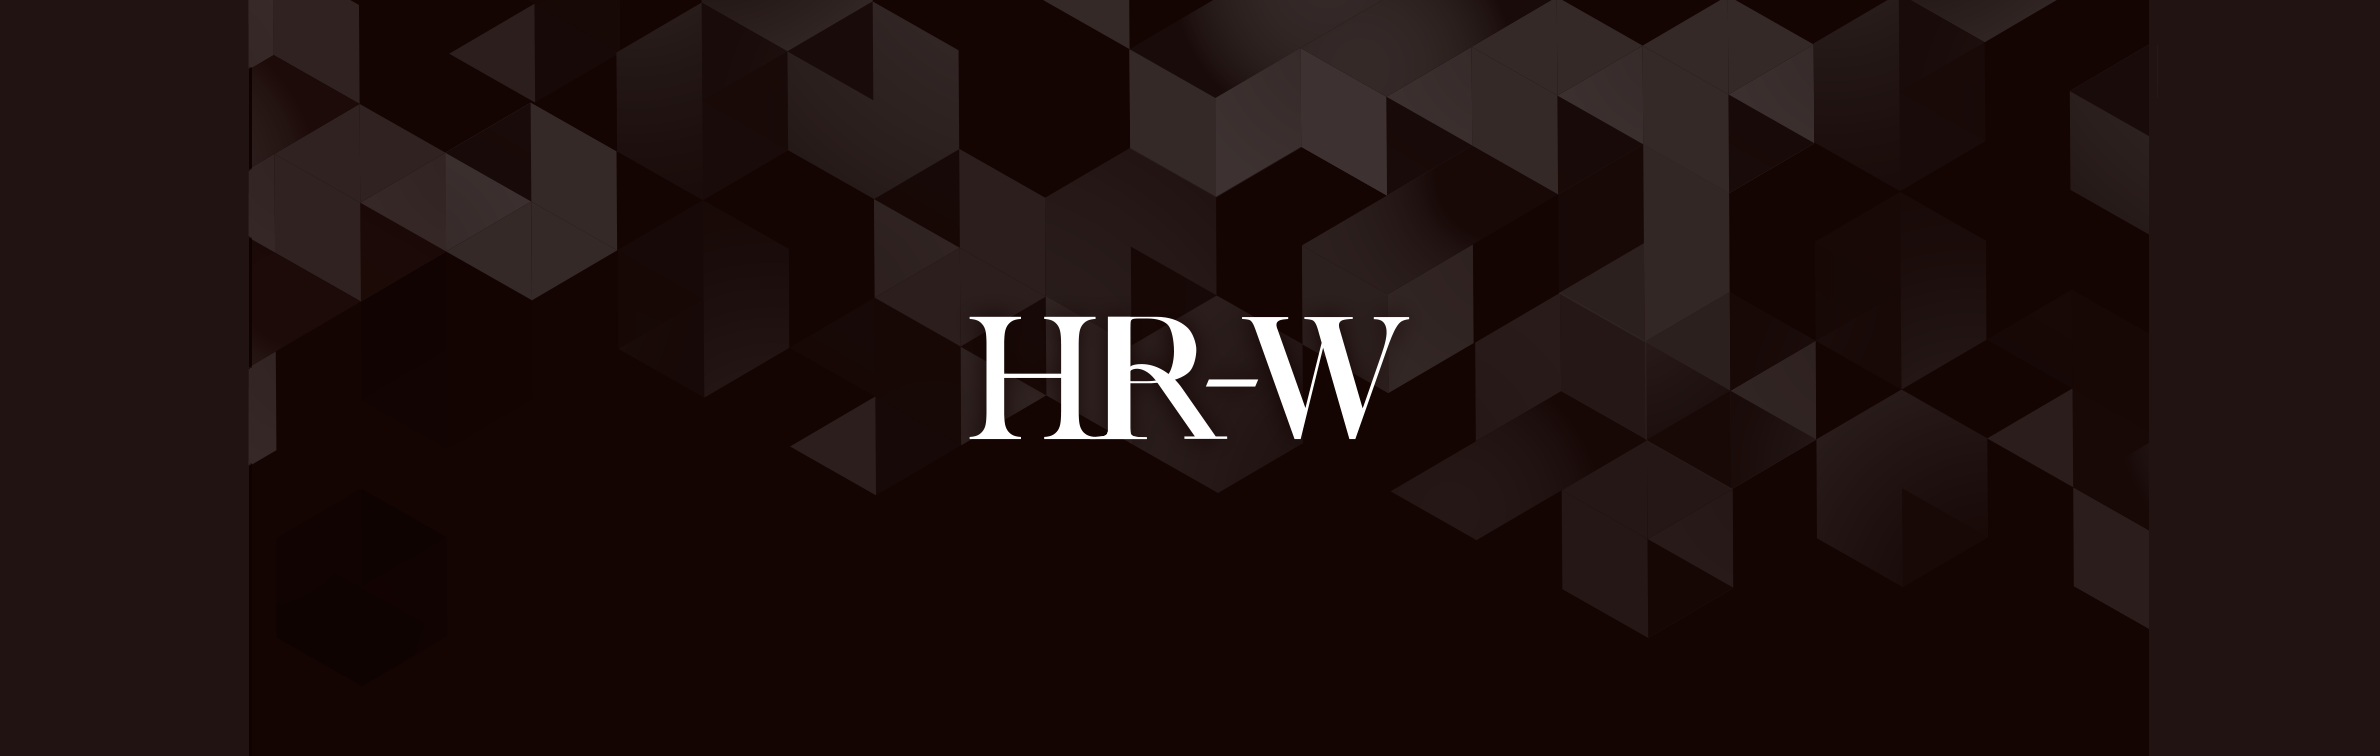 HR-W